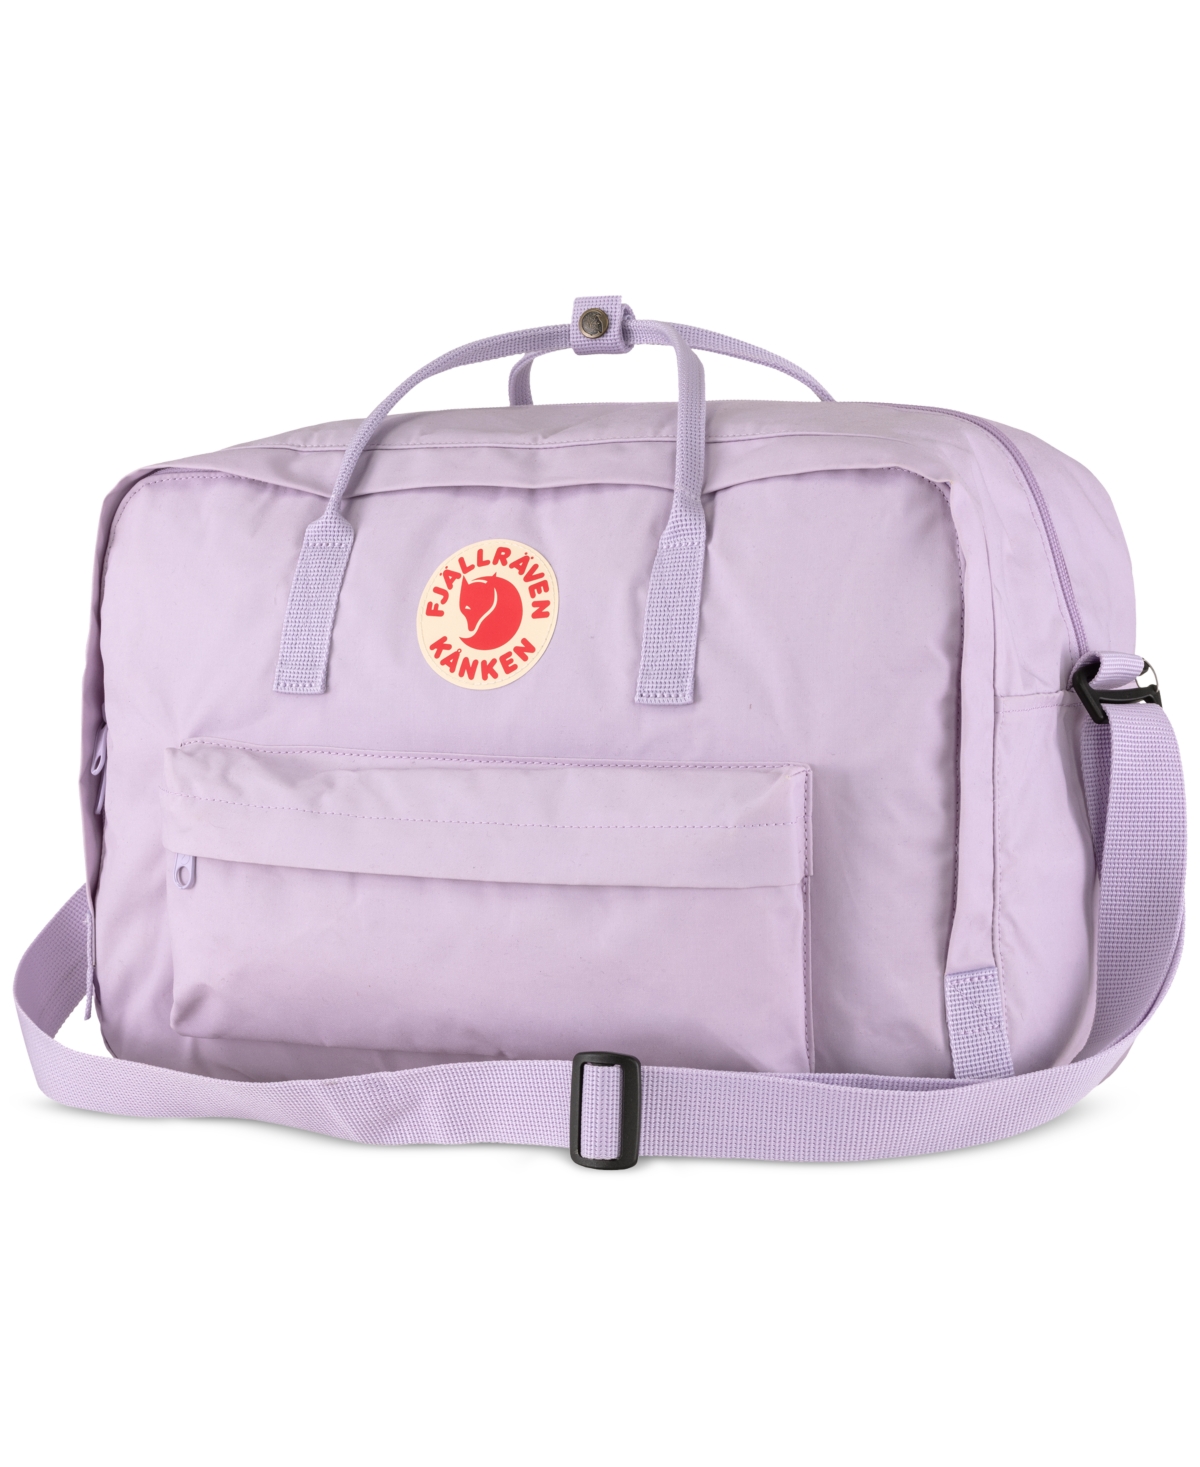 Fjall Raven Kanken Weekender Bag In Pastel Lavender